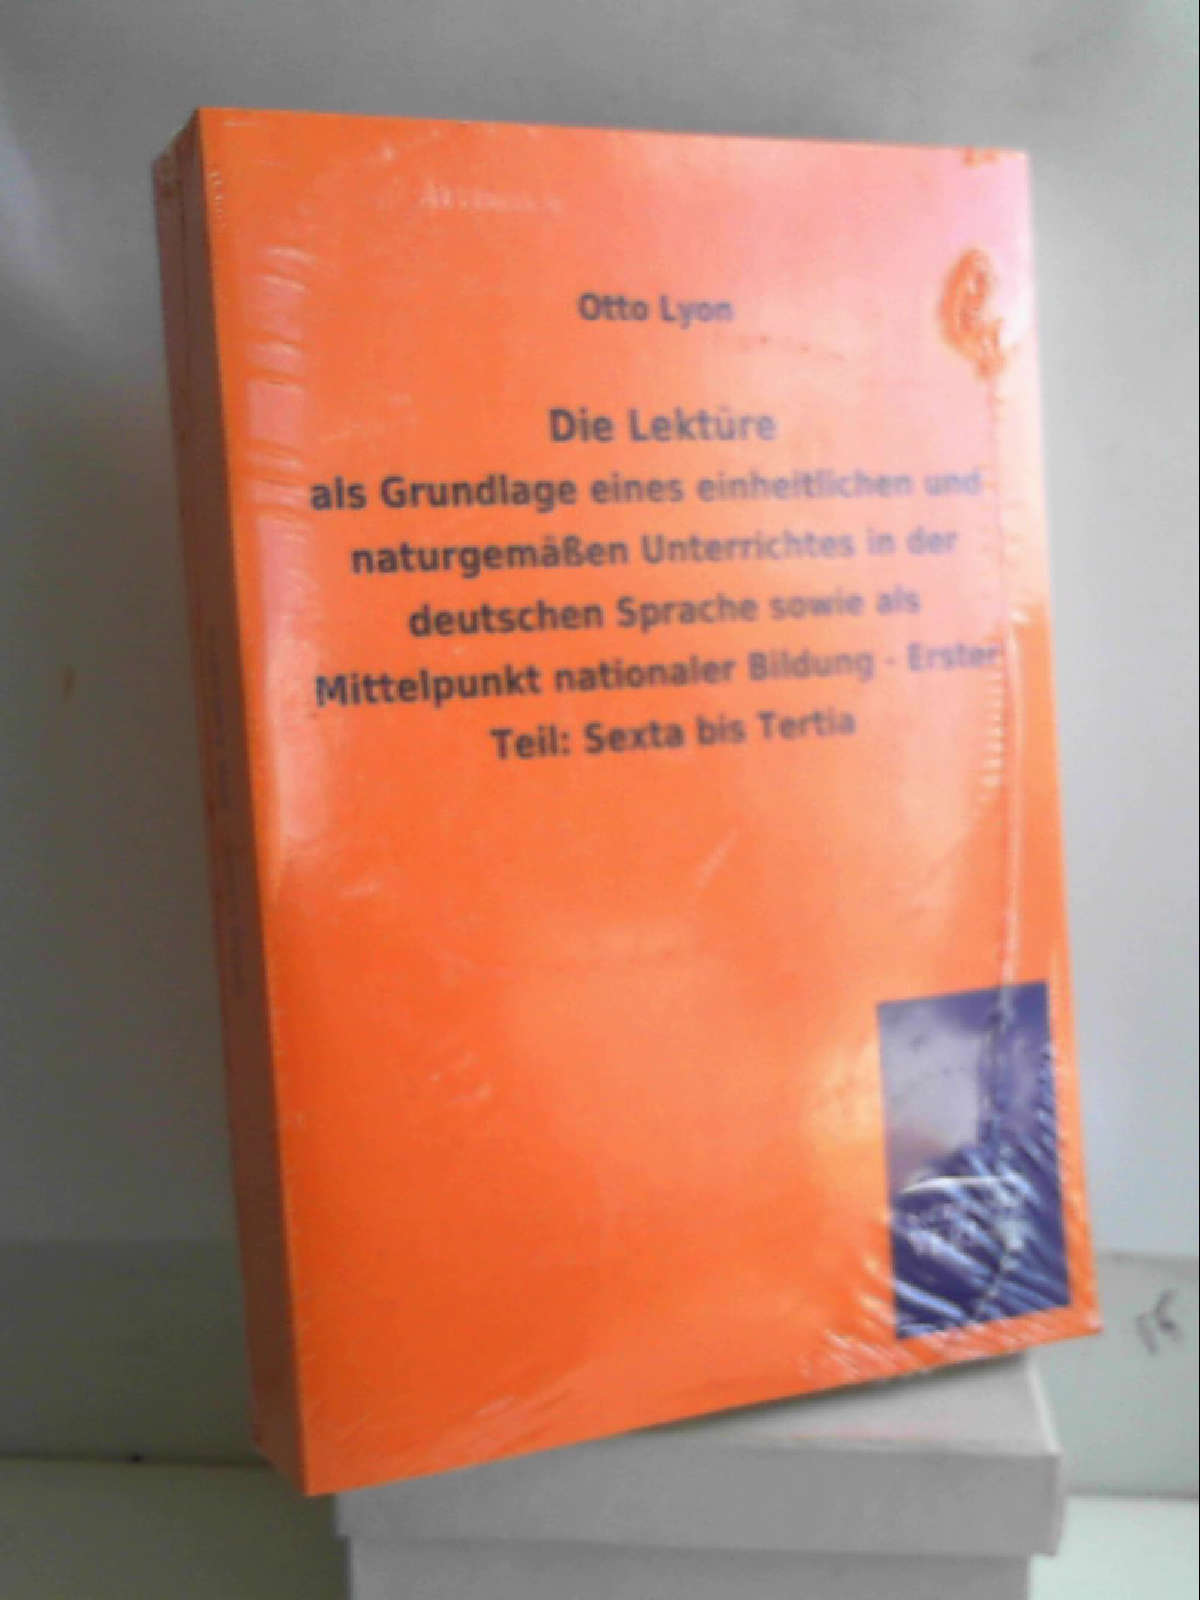 Die Lektüre: als Grundlage eines einheitlichen und naturgemäßen Unterrichtes in der deutschen Sprache sowie als Mittelpunkt nationaler Bildung - Erster Teil: Sexta bis Tertia - Otto Lyon